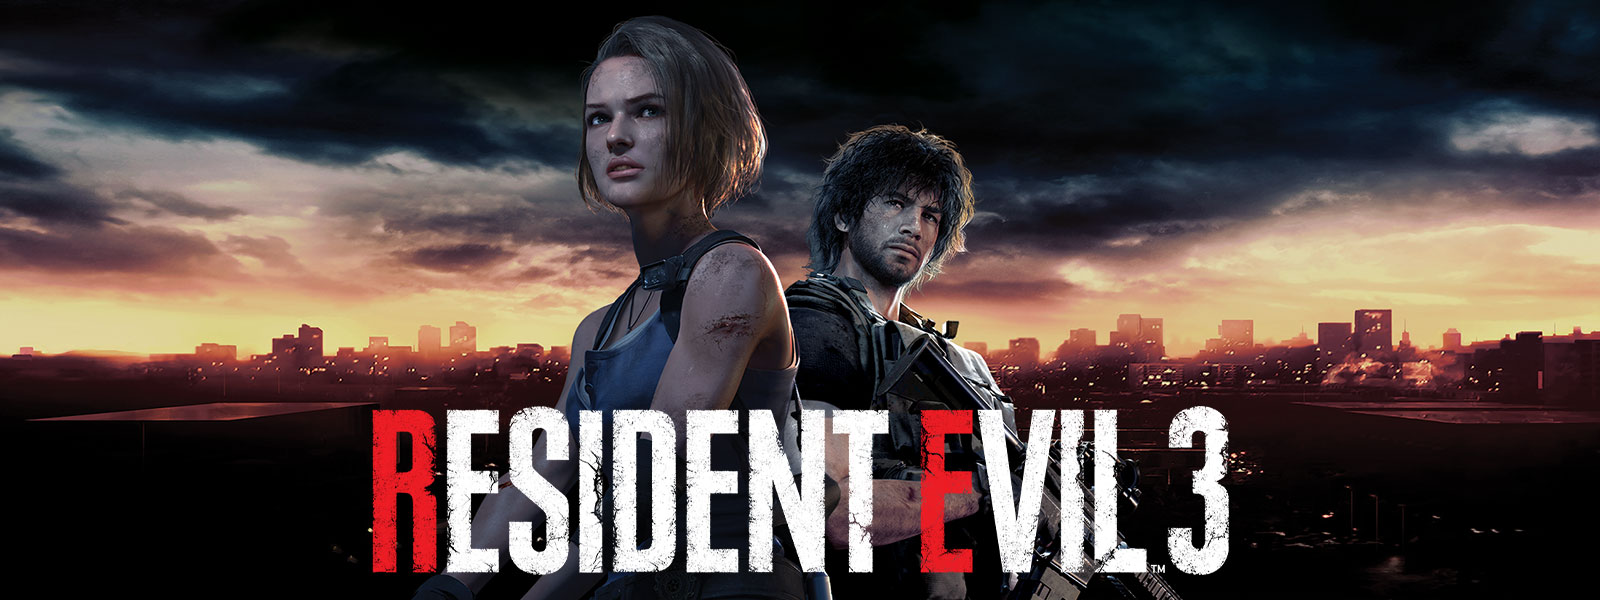 Resident Evil 3, Jill Valentine ve Carlos Oliveira, Raccoon City'nin gökyüzü görüntüsünün önünde duruyor